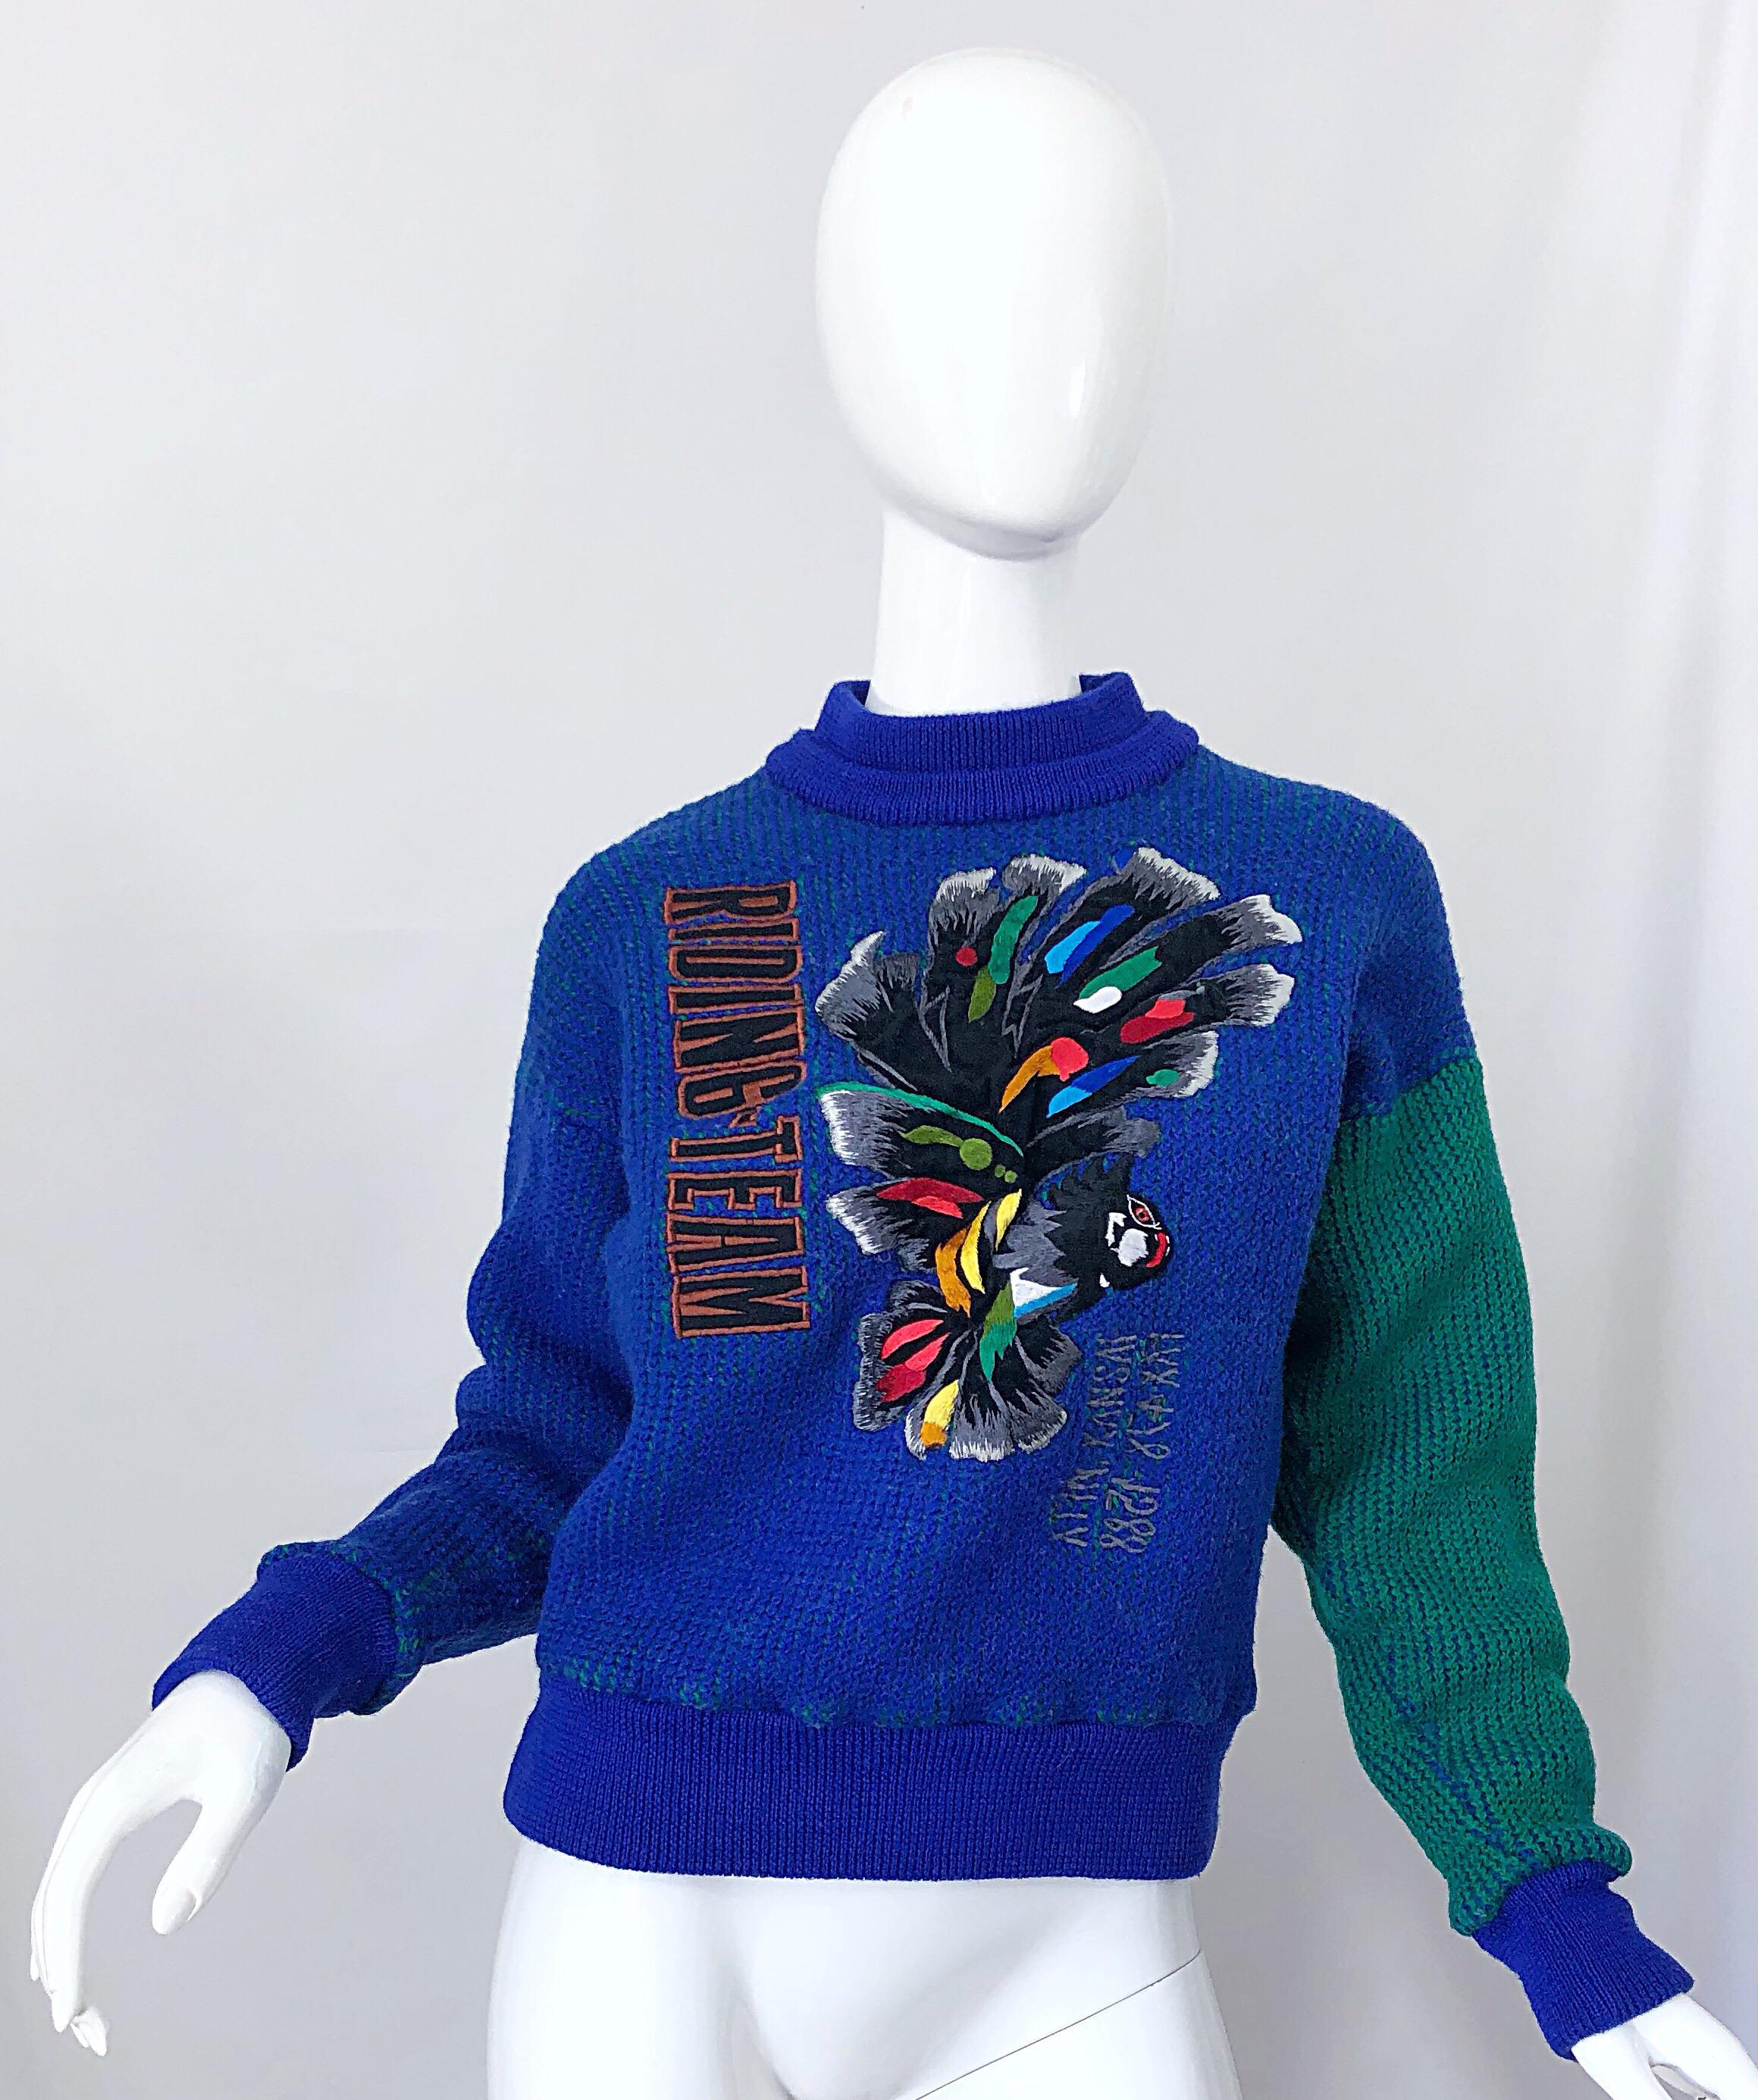 Seltene 1980er vintage KANSAI YAMAMOTO königsblau und grün Farbblock Neuheit ' Riding Team ' bestickt Wollpullover! Mit königsblauer und grüner Intarsie aus weicher gewebter Wolle. Stickereidetail auf der Vorderseite. Wird einfach über den Kopf